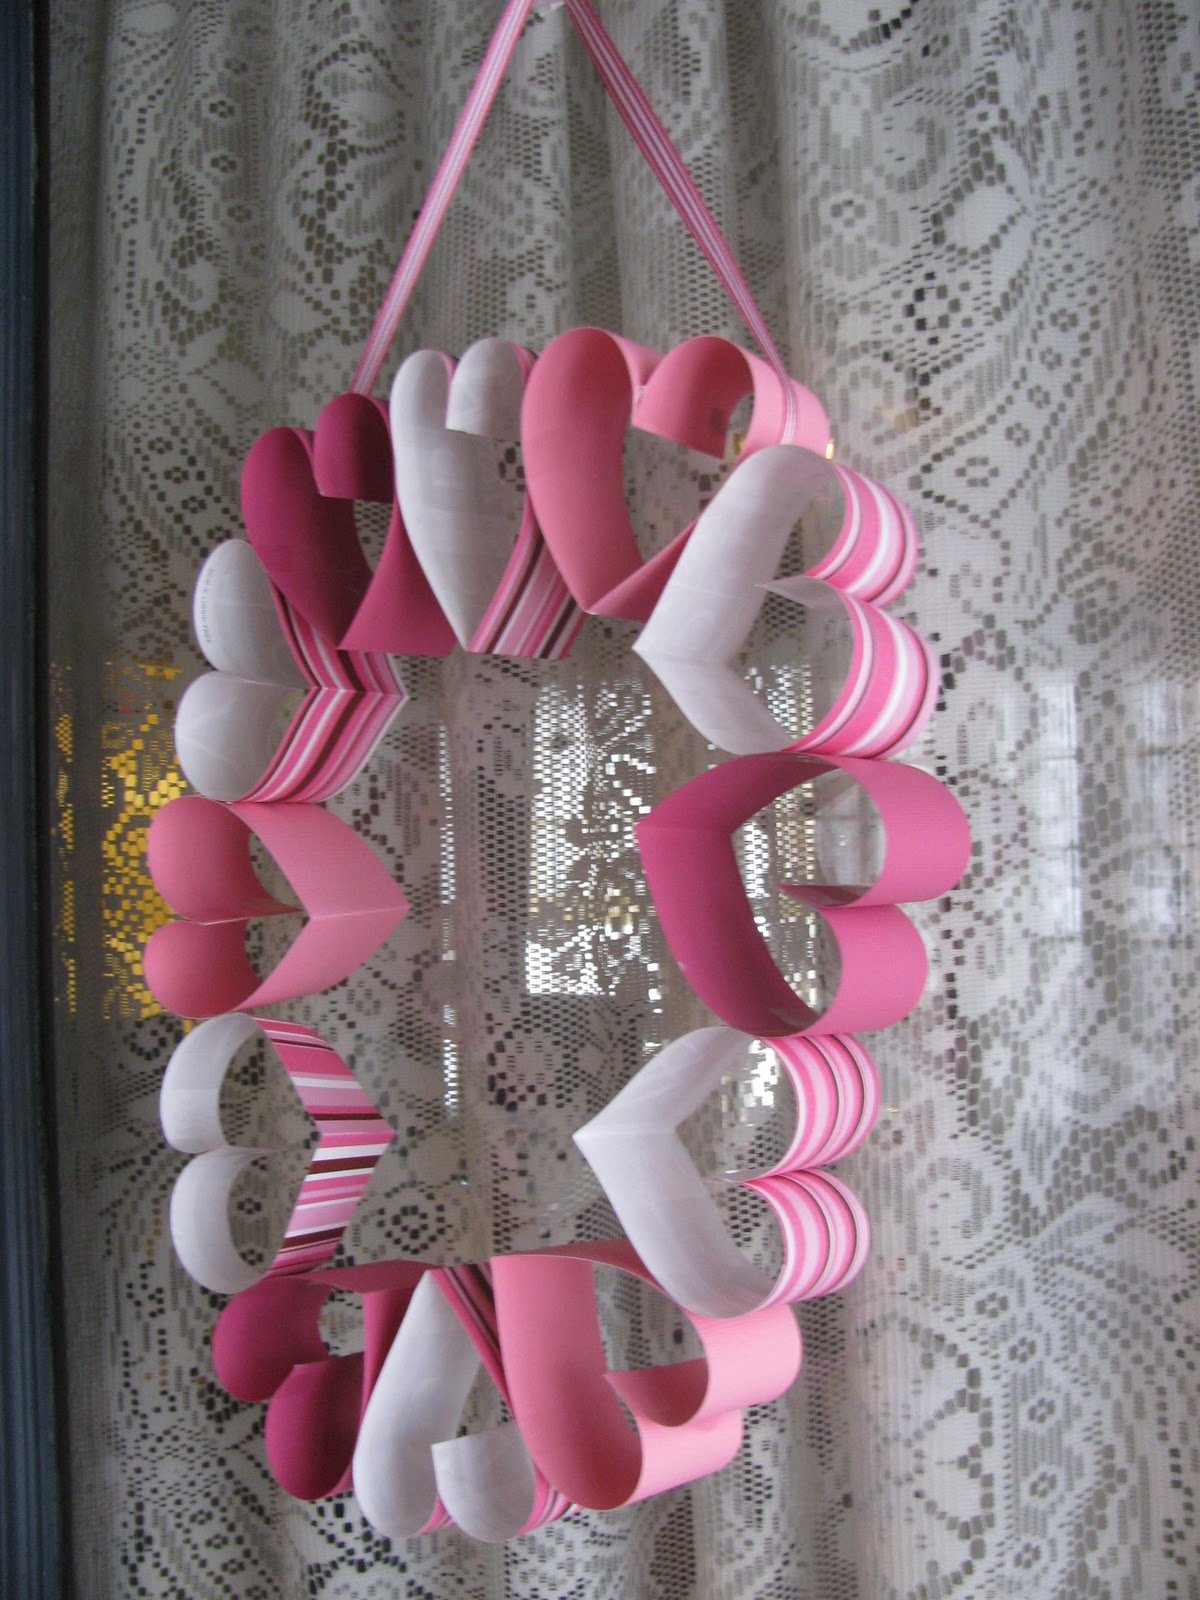 5 days Of Valentines Day Crafts... Day 1 | Valentine crafts, Diy